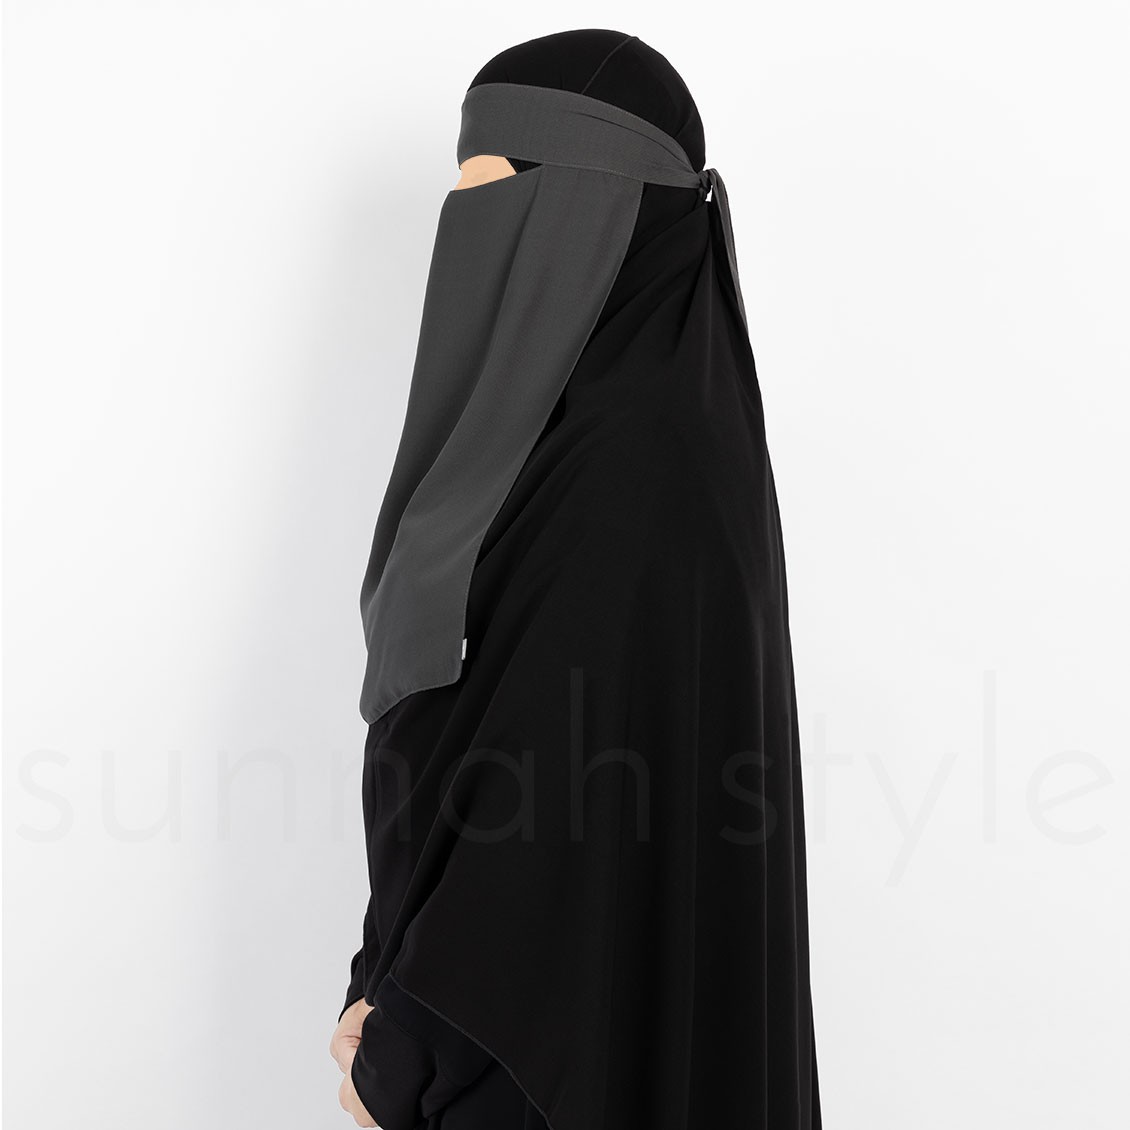 Sunnah Style One Layer One Piece Niqab Dark Grey